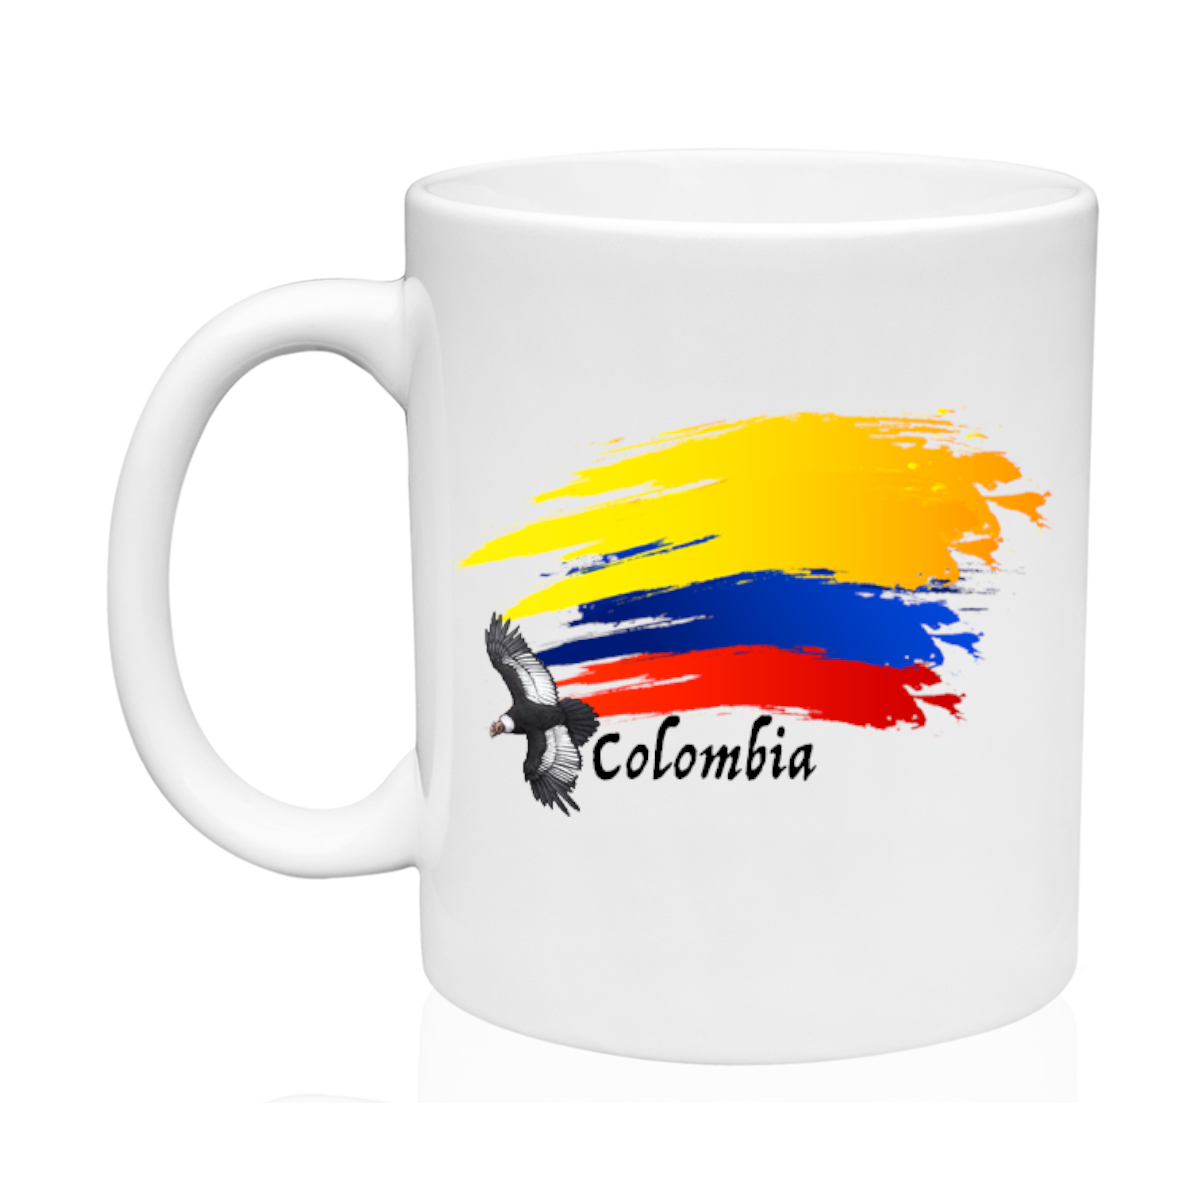 AGAD Turista (I Love Colombia Mug)